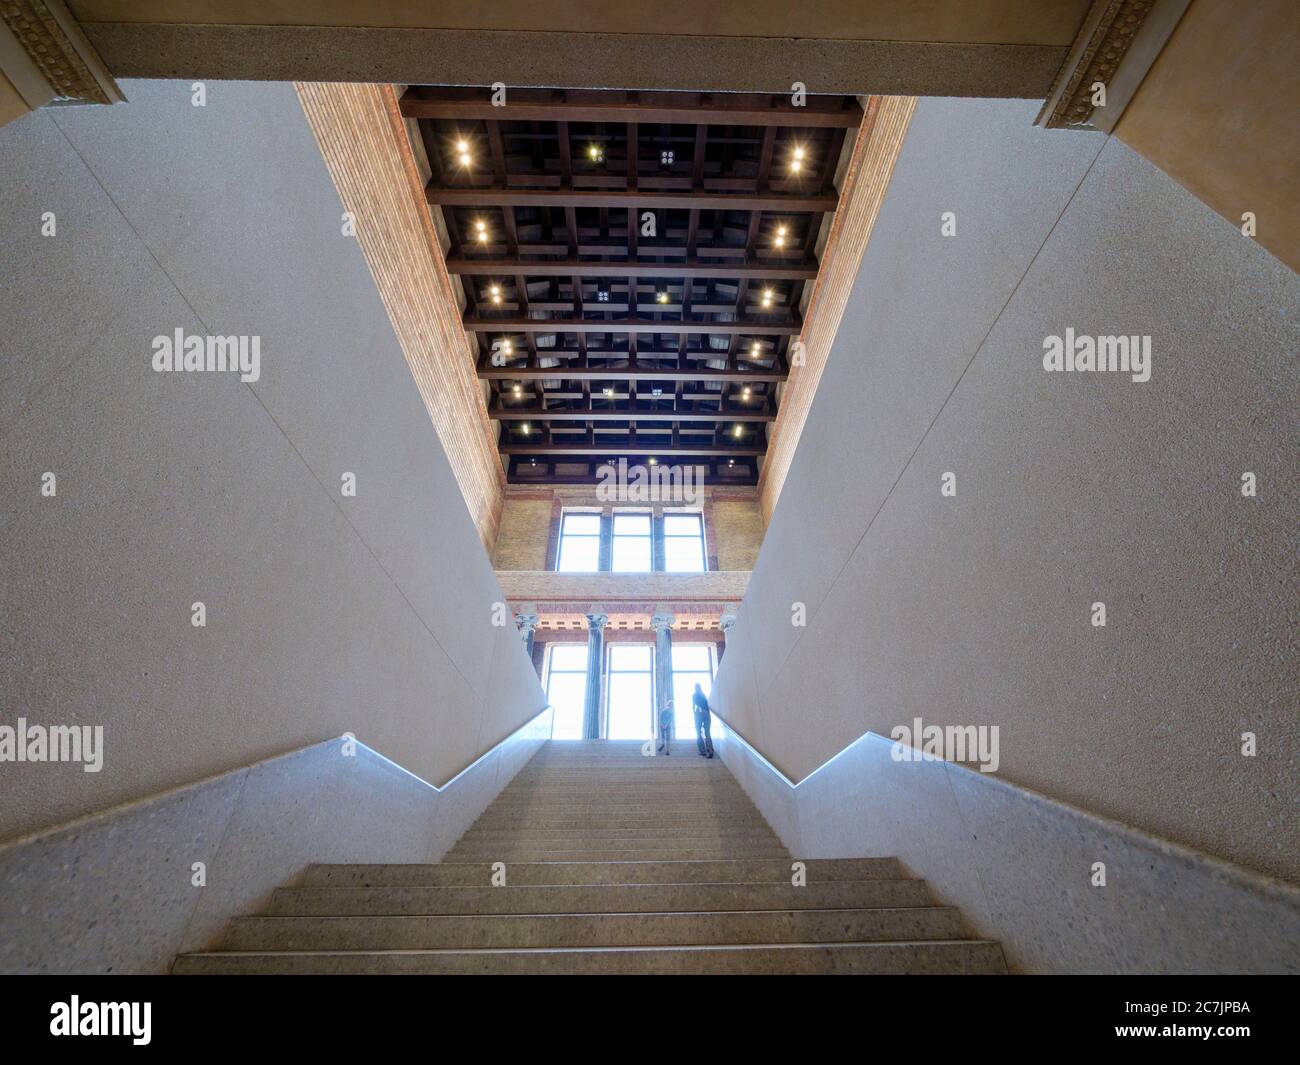 Musée Neues, intérieur, escalier, escalier, Ile aux Musées, Berlin, Allemagne Banque D'Images